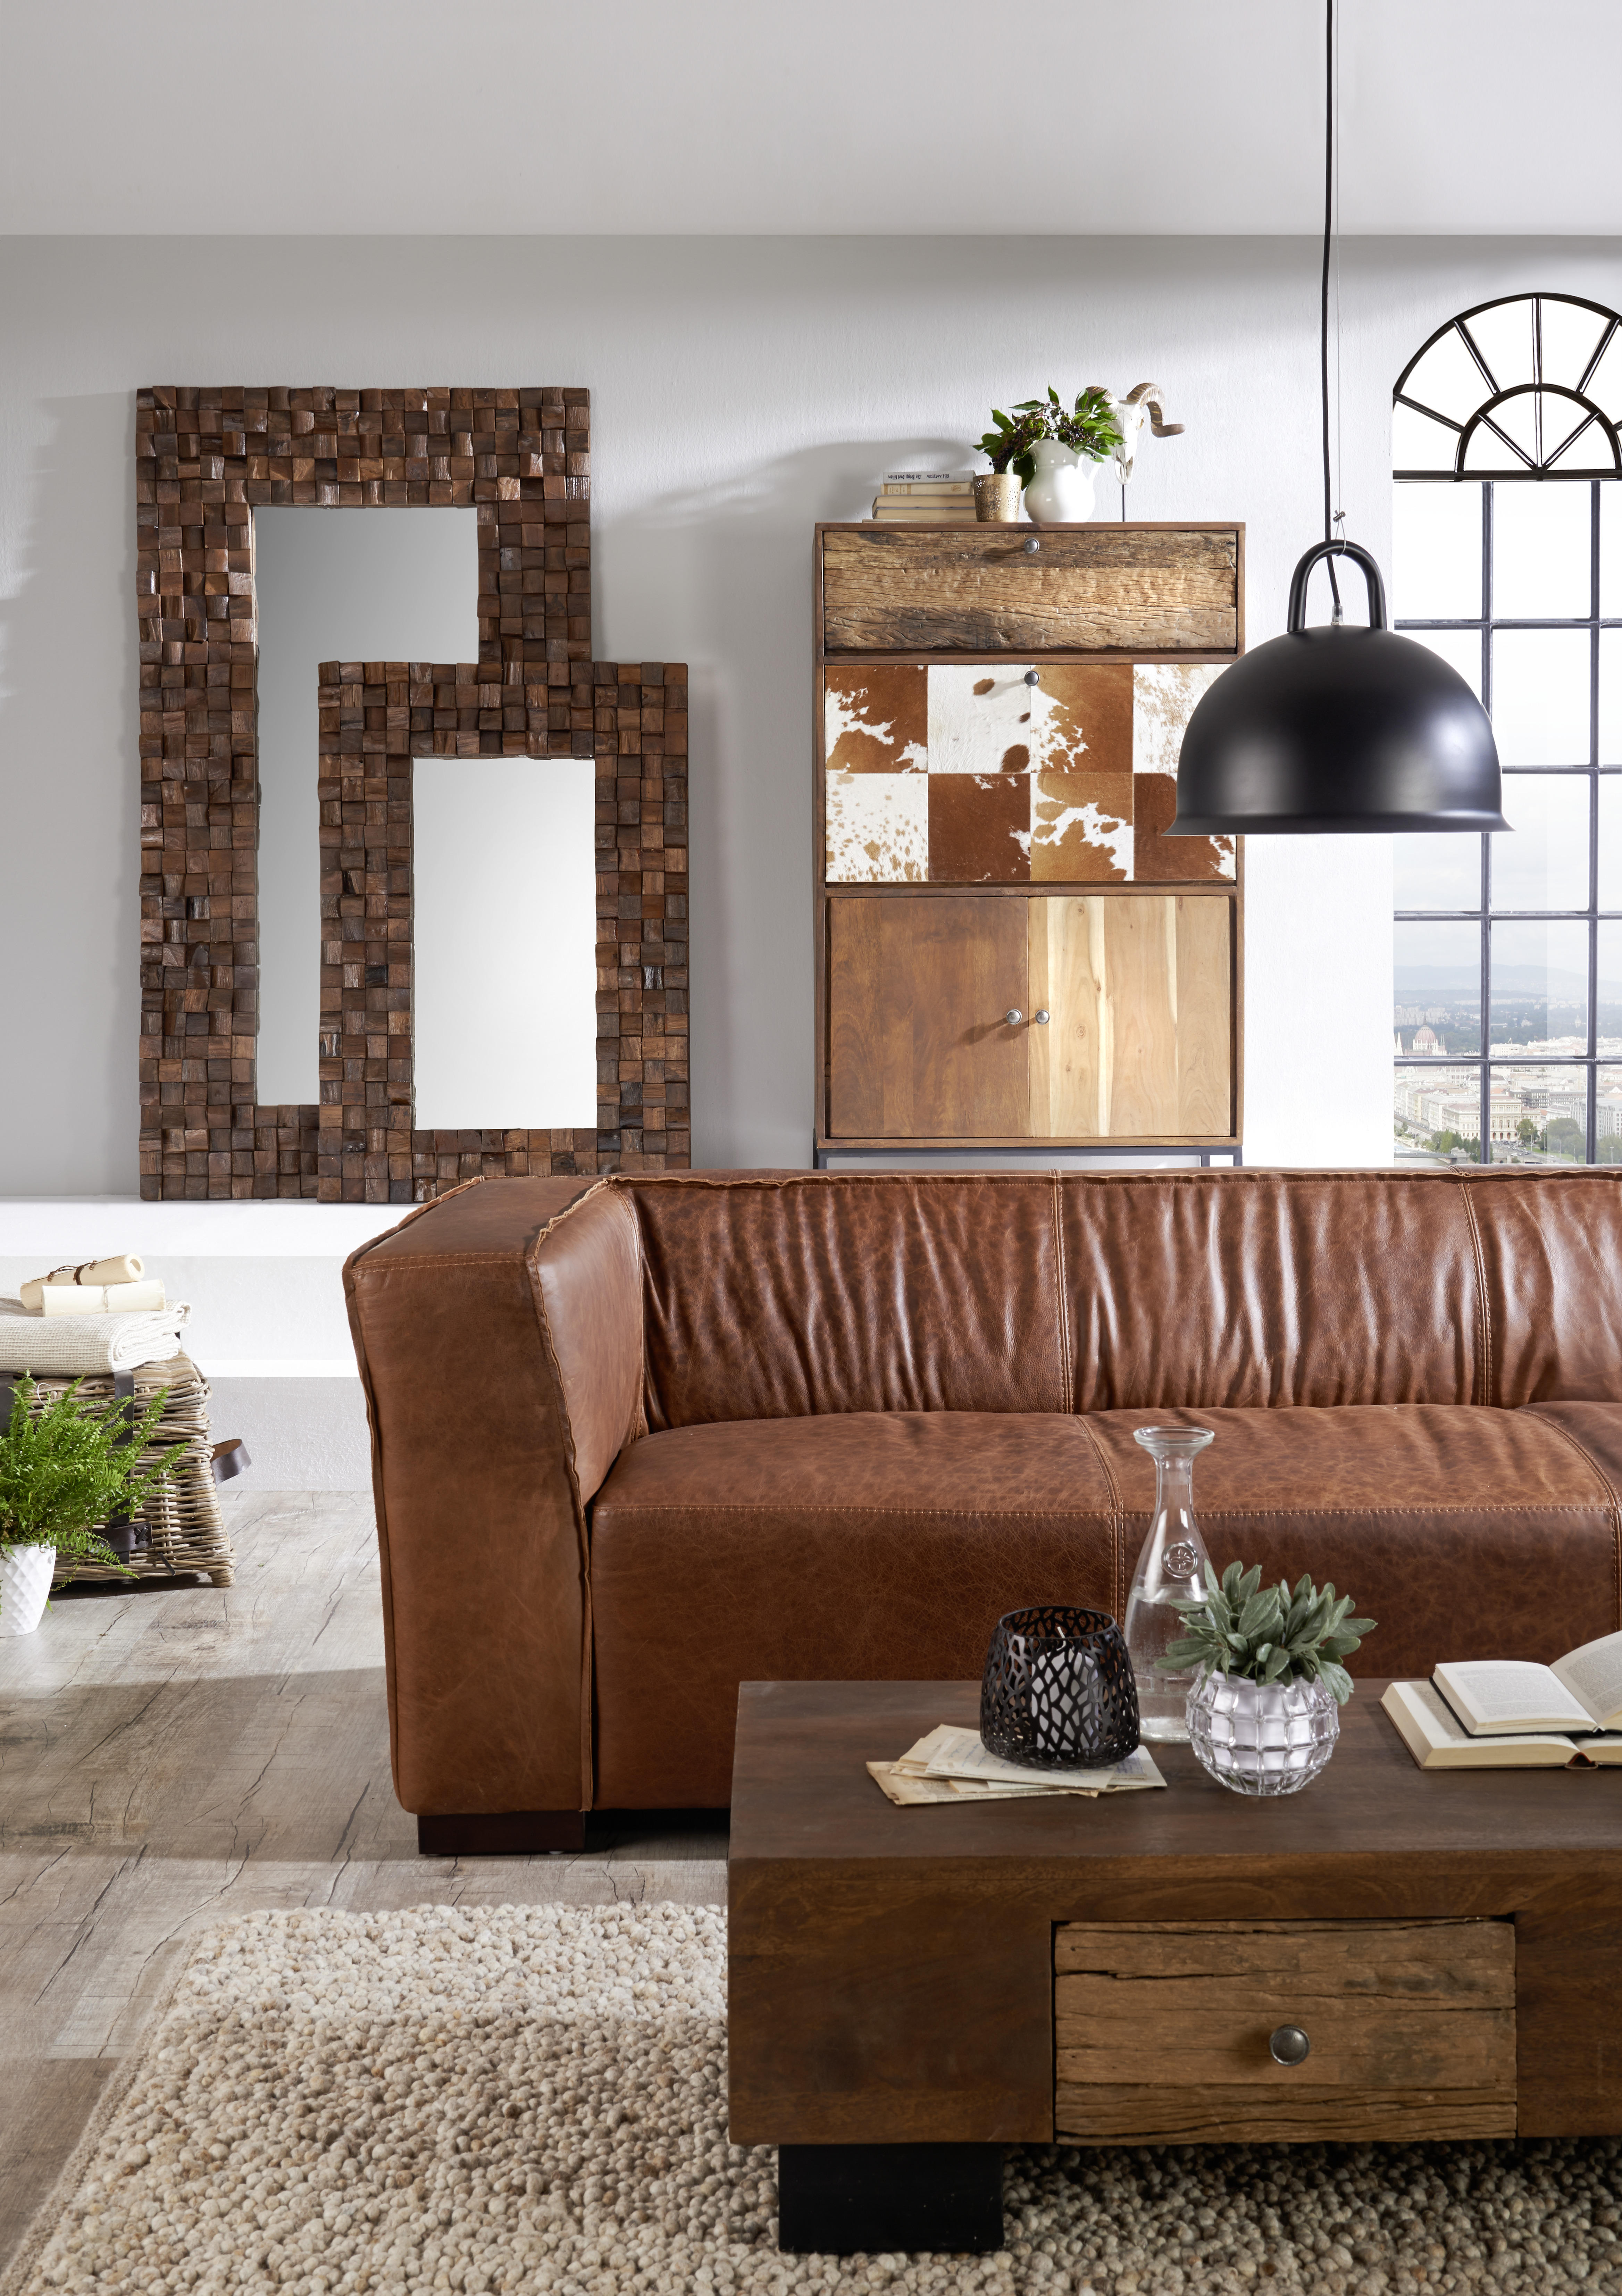 SOFFA in äkta läder brun  - brun, Trend, läder/trä (228/72/90cm) - Ambia Home